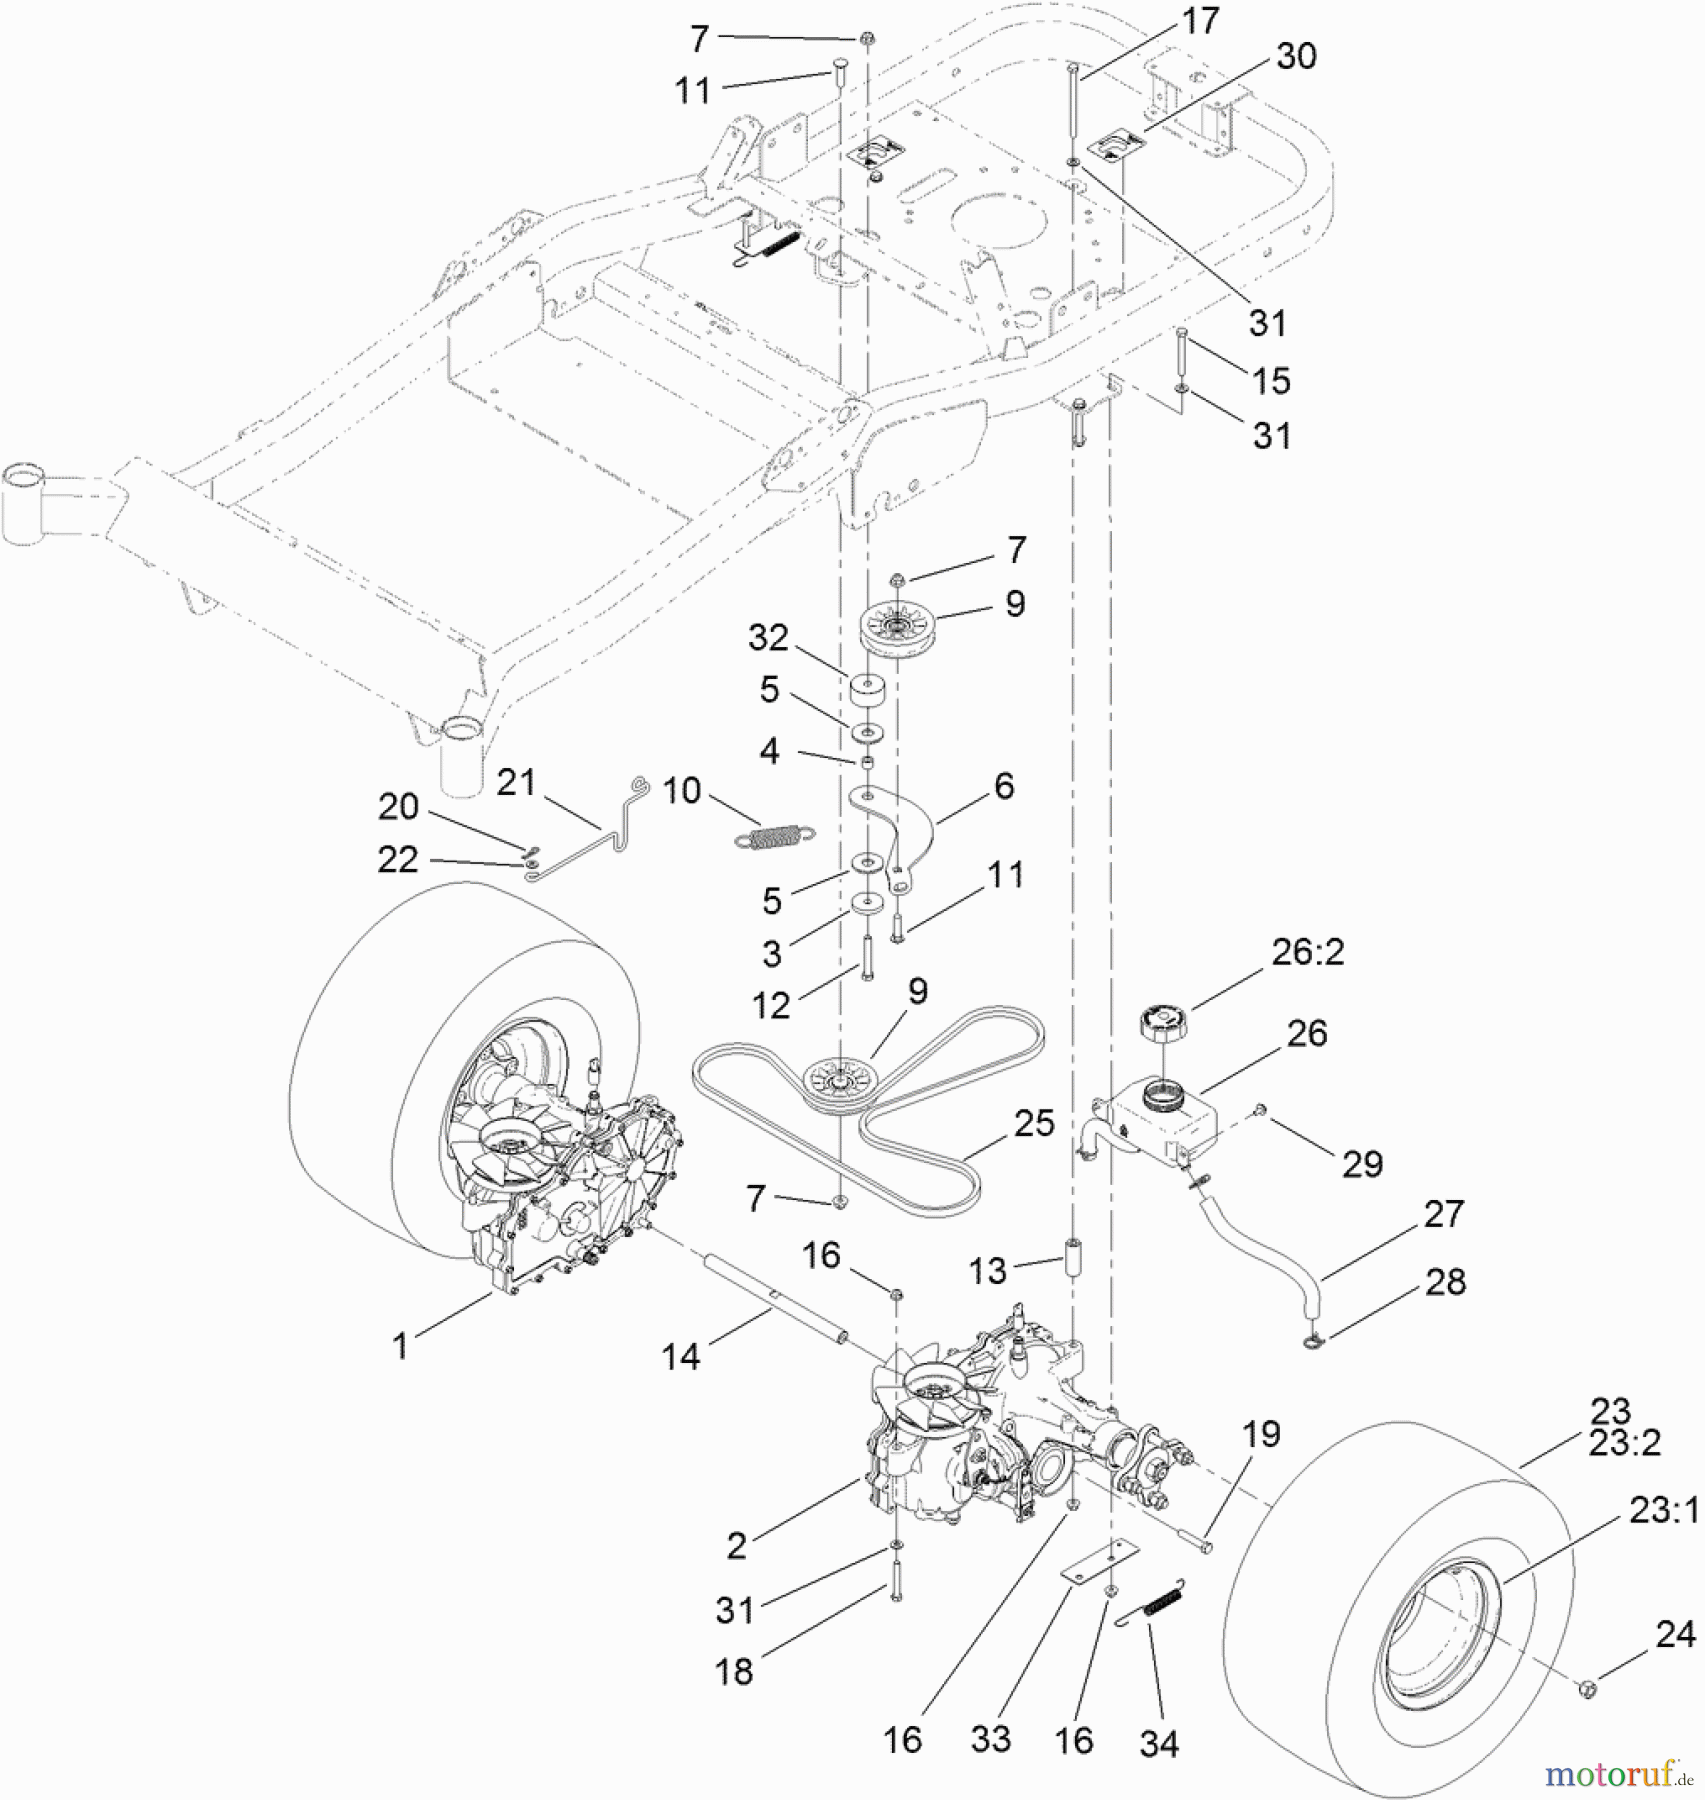  Toro Neu Mowers, Zero-Turn 74845 (ZX4820) - Toro TITAN ZX4820 Zero-Turn-Radius Riding Mower, 2011 (SN 311000001-311999999) TRACTION DRIVE ASSEMBLY